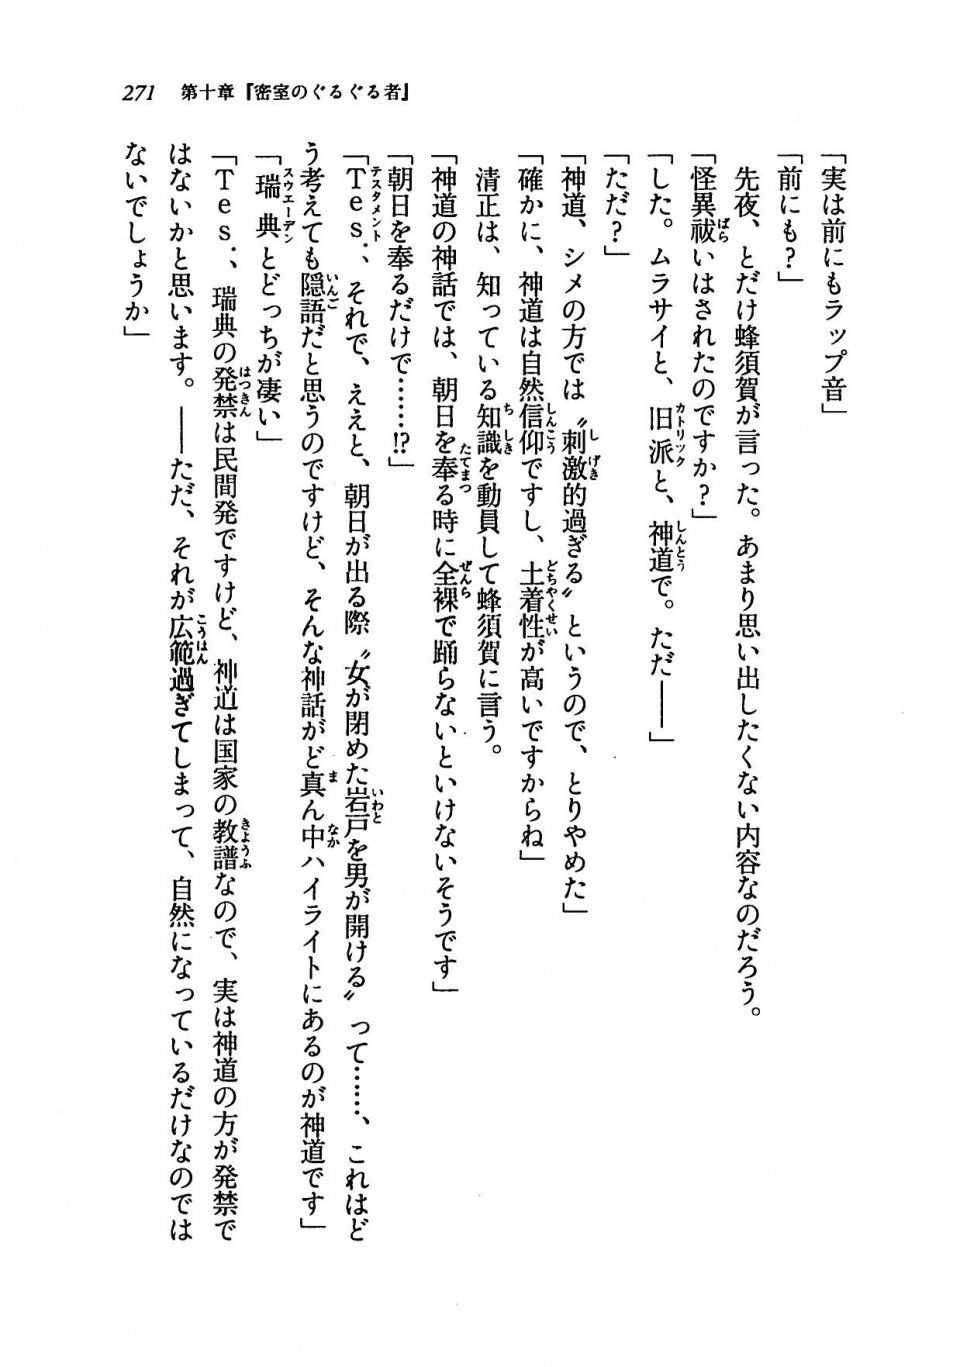 Kyoukai Senjou no Horizon LN Vol 19(8A) - Photo #271